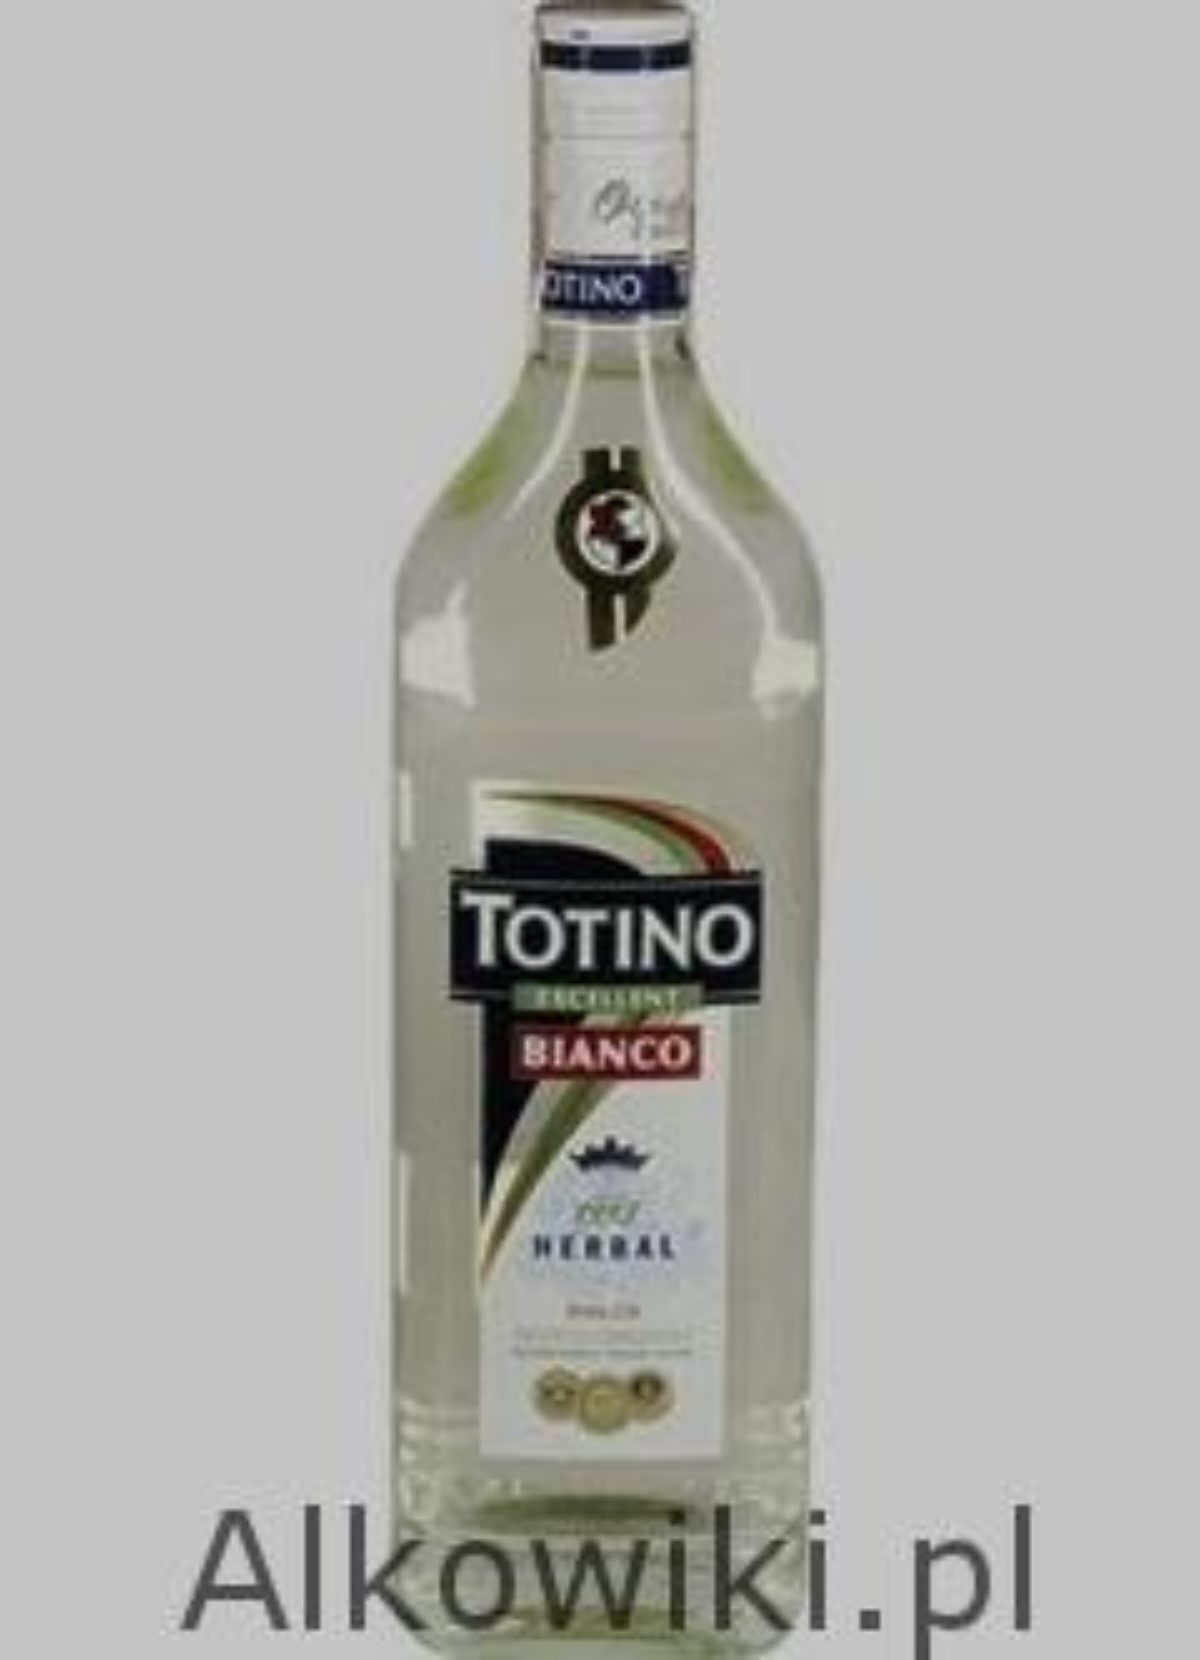 Totino - Oceń Ceny, recenzje, przepisy i opinie